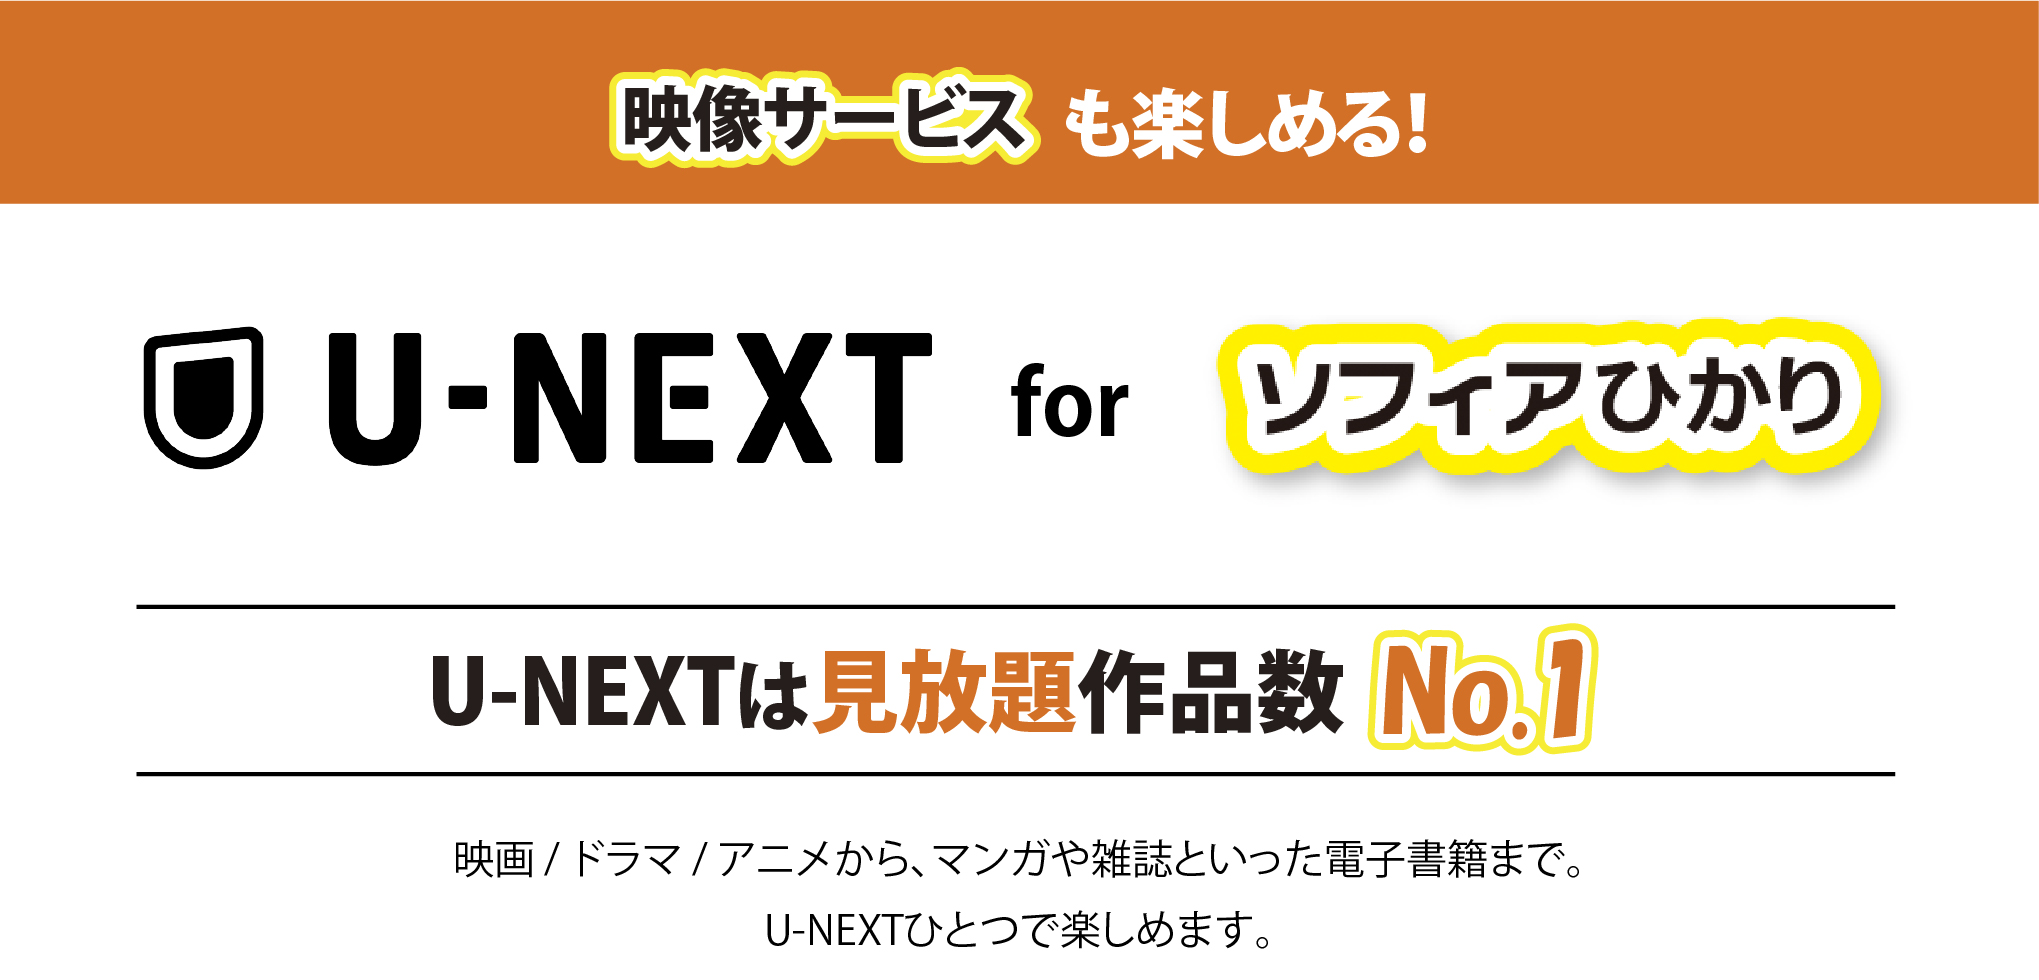 U-NEXT for ソフィアひかり U=NEXTは見放題作品数No.1 映画・ドラマ・アニメから、マンガや雑誌といった電子書籍まで。U-NEXTひとつで楽しめます。